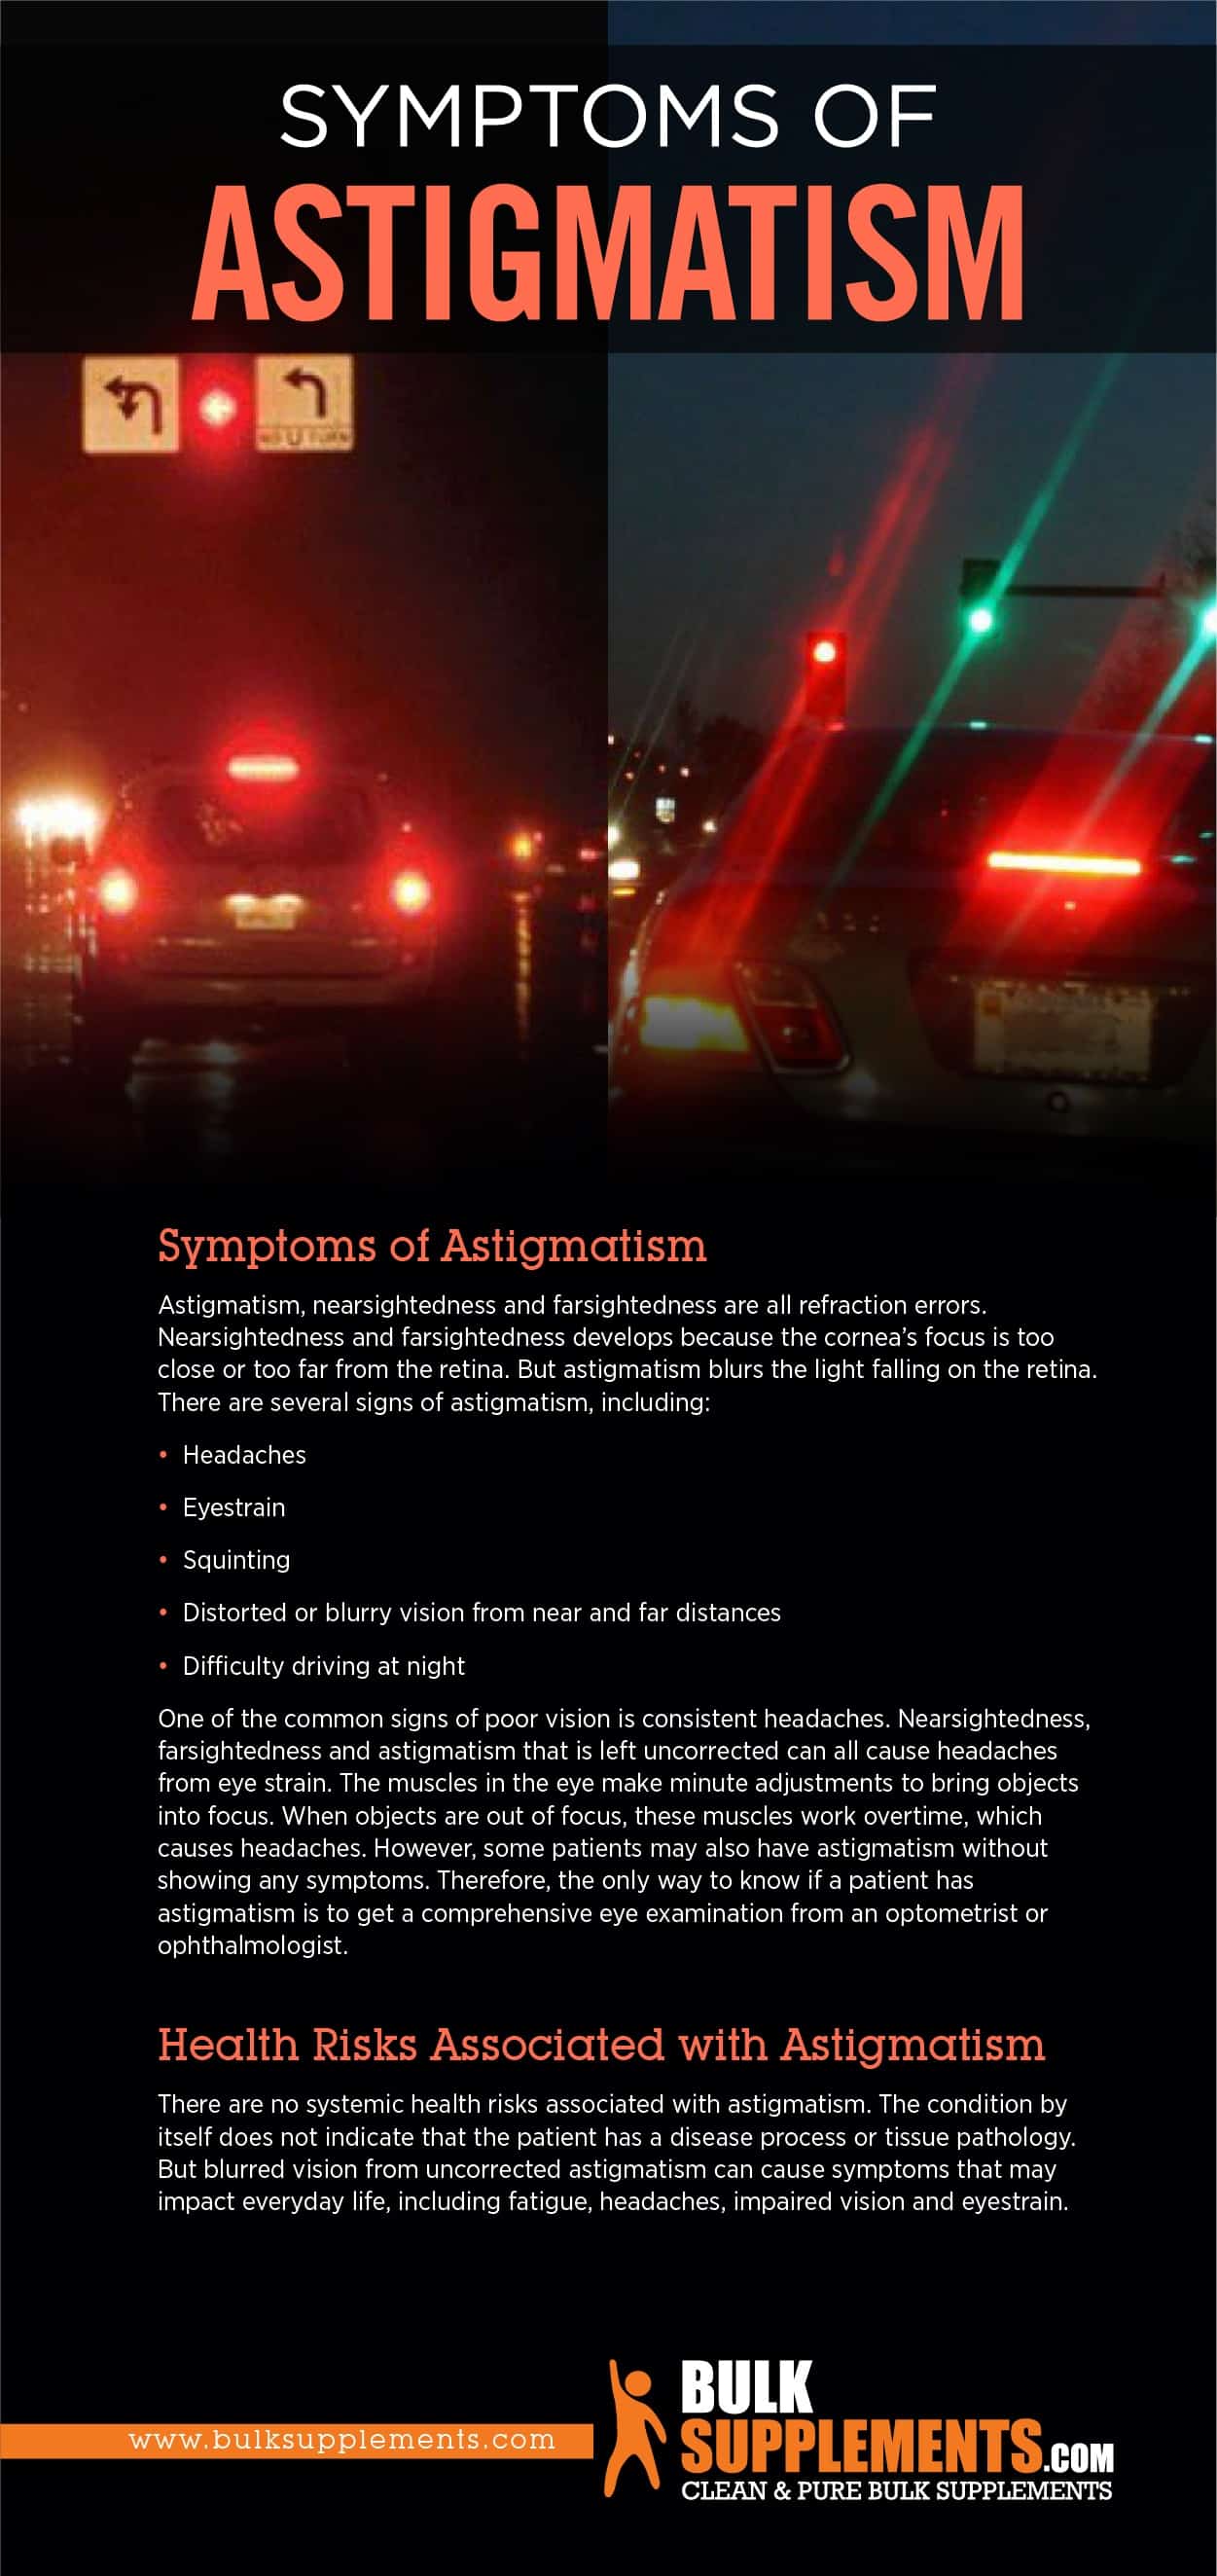 Symptoms of Astigmatism